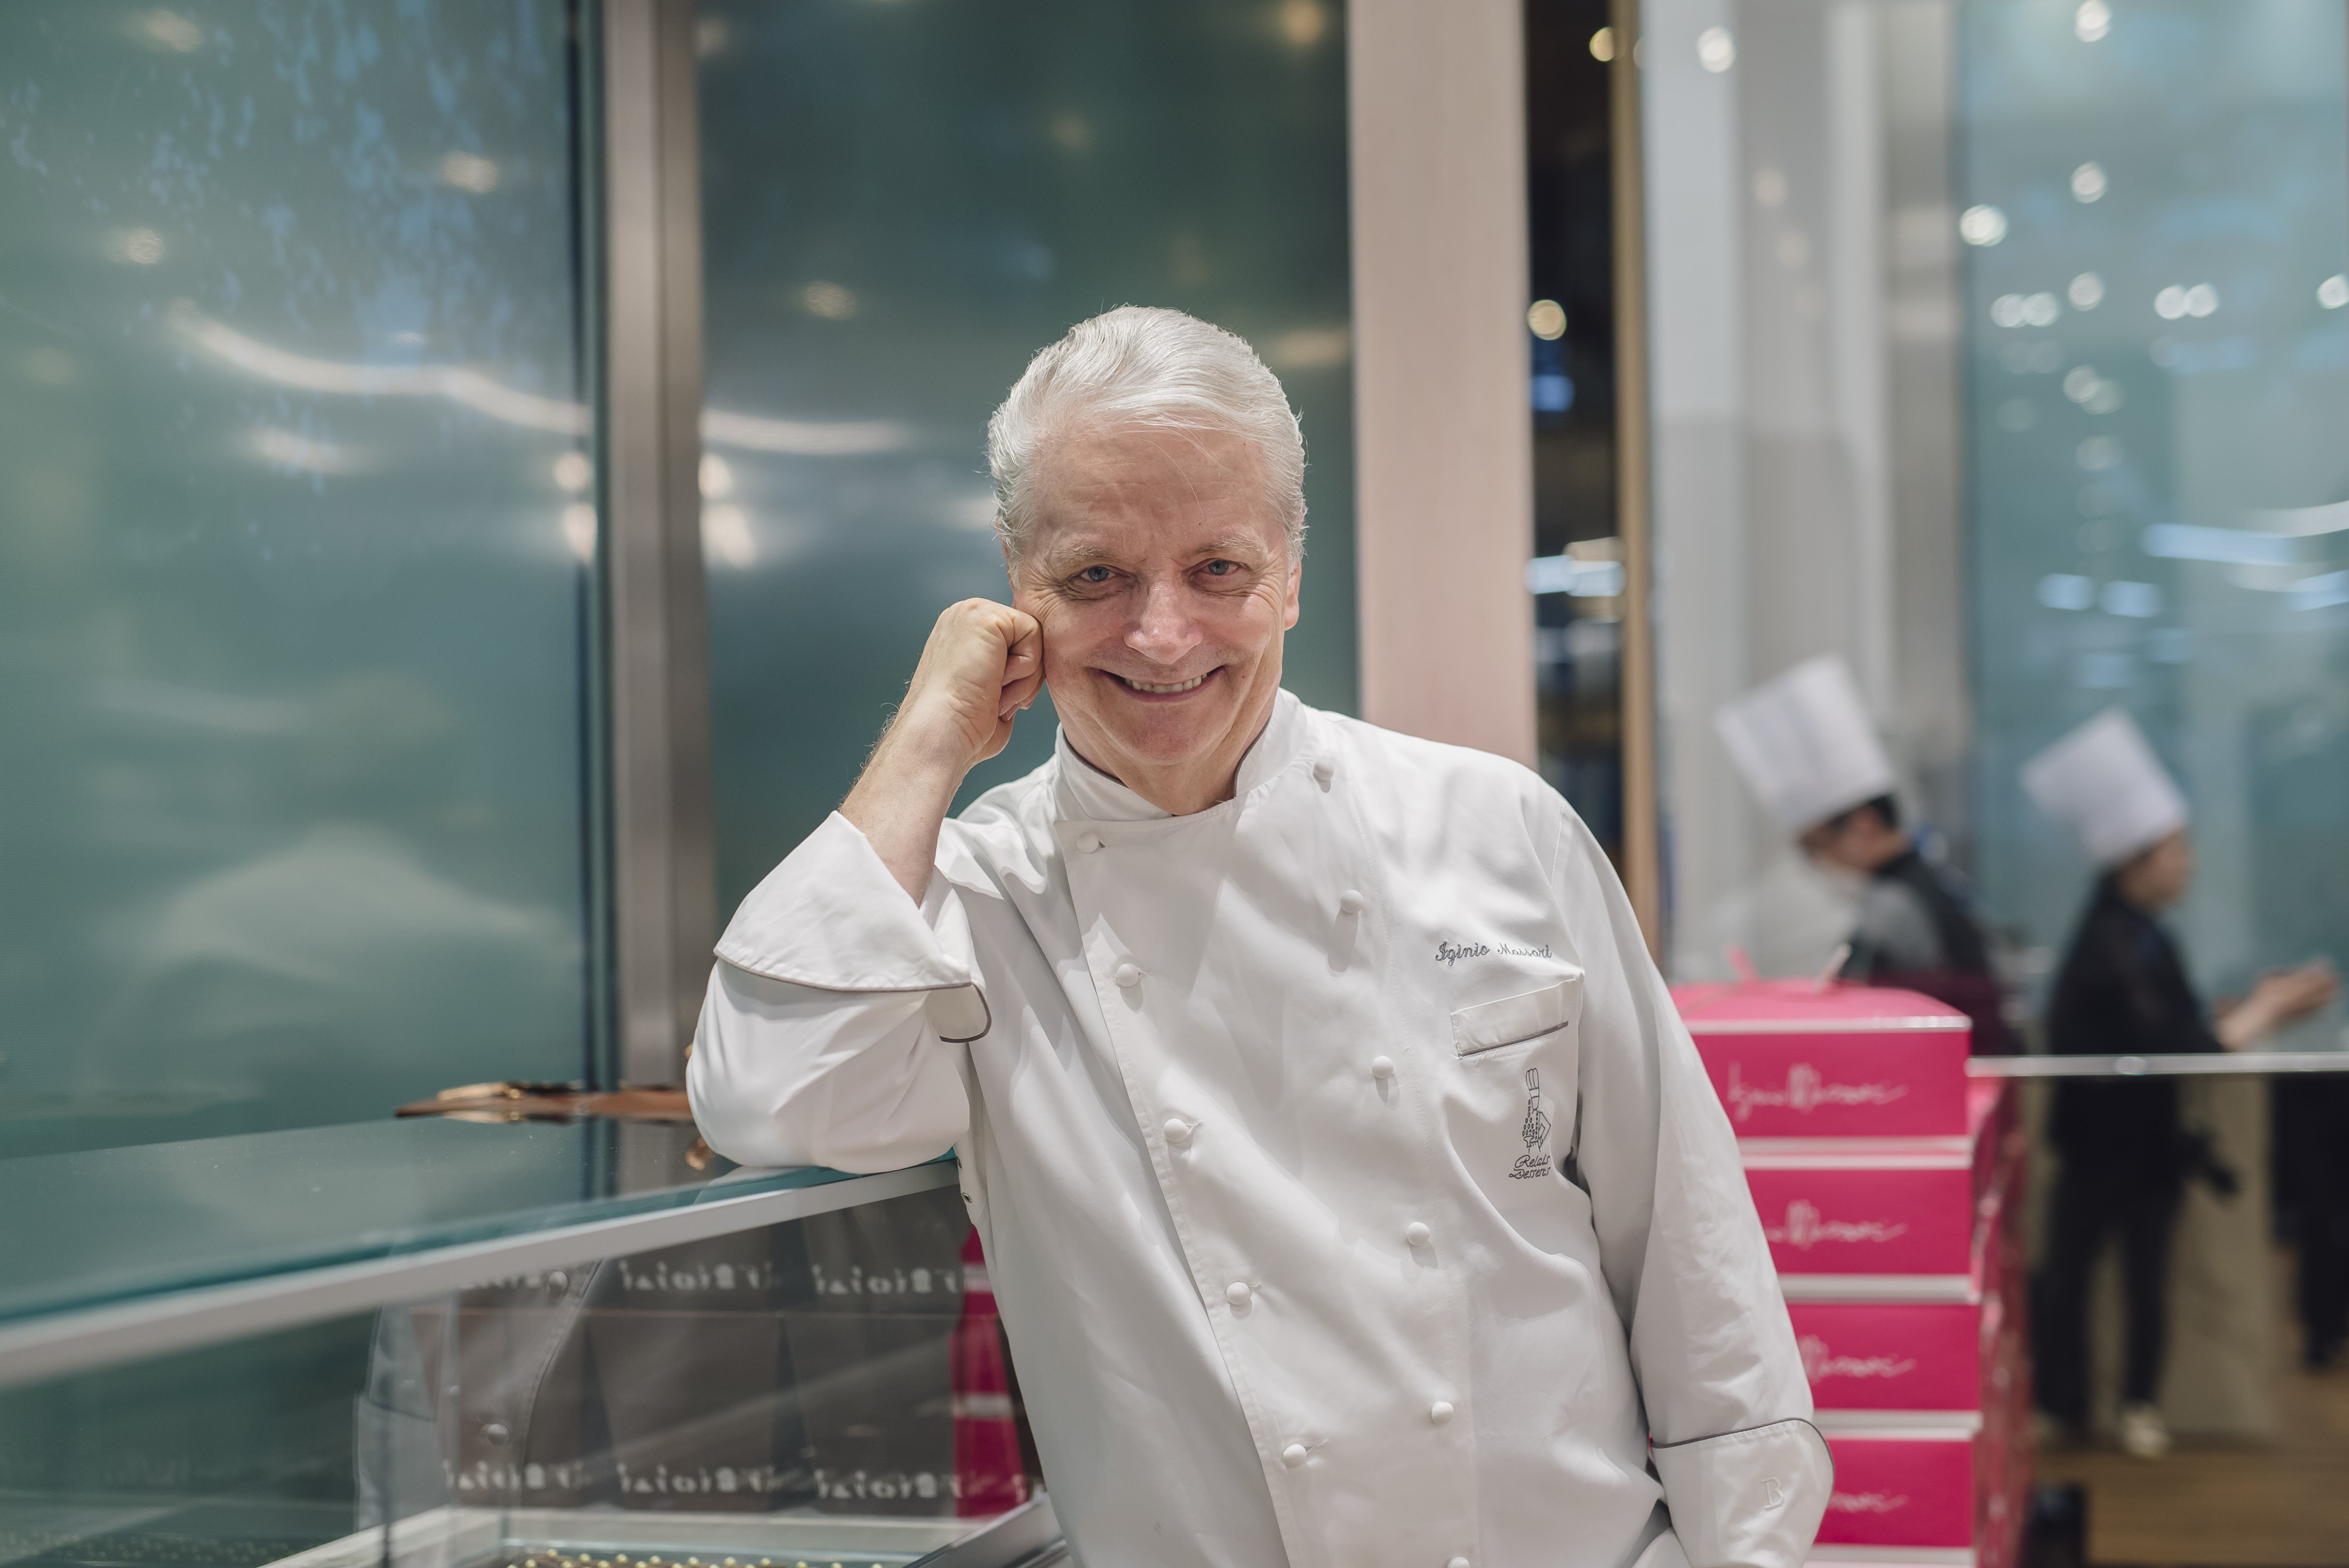 Iginio Massari best pastry chef in Italy for 2020